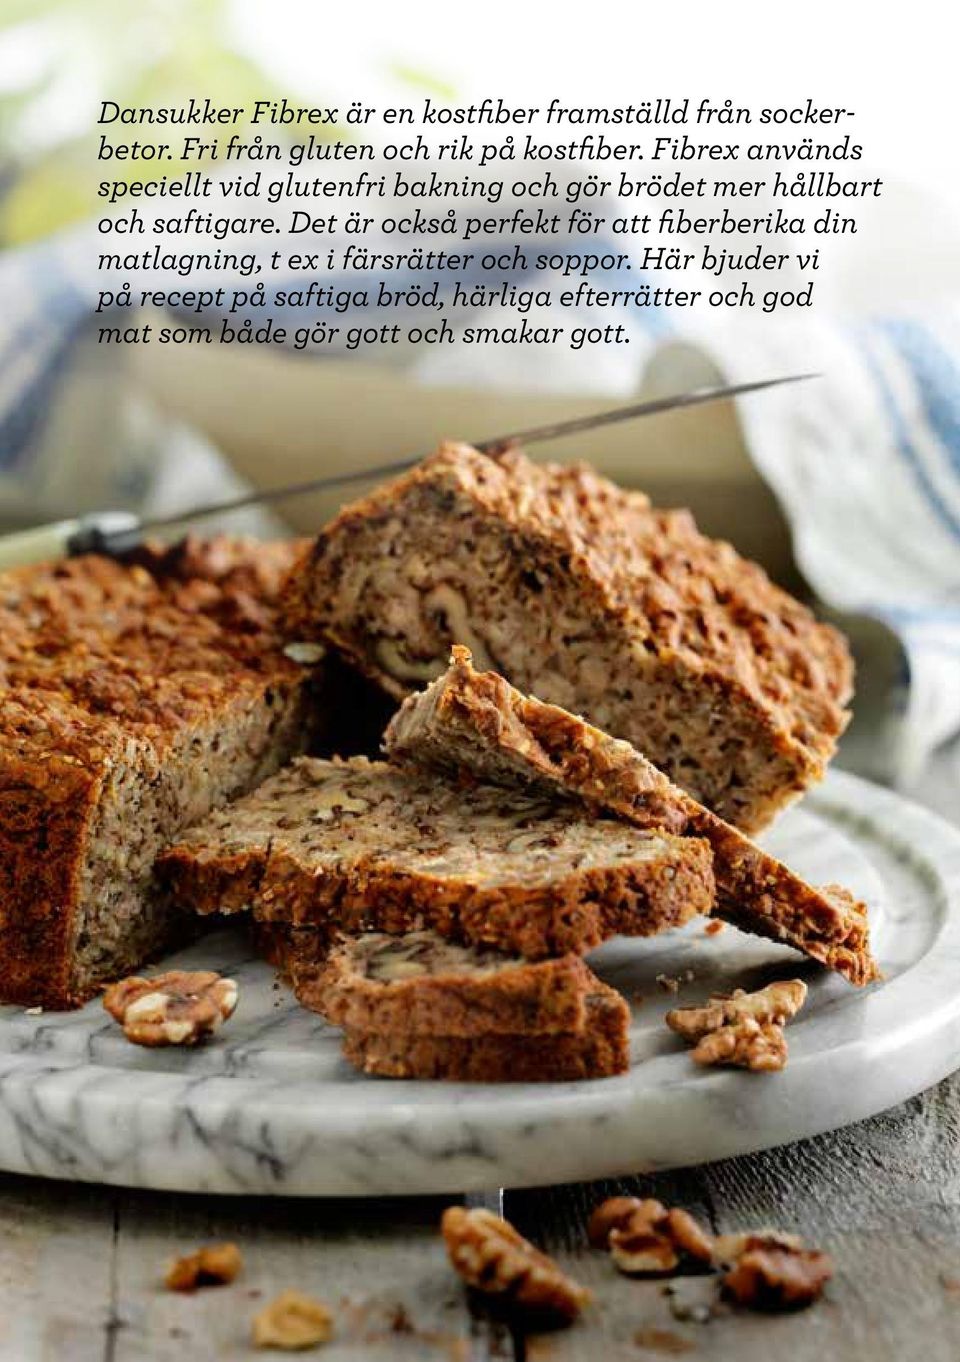 Fibrex används speciellt vid glutenfri bakning och gör brödet mer hållbart och saftigare.